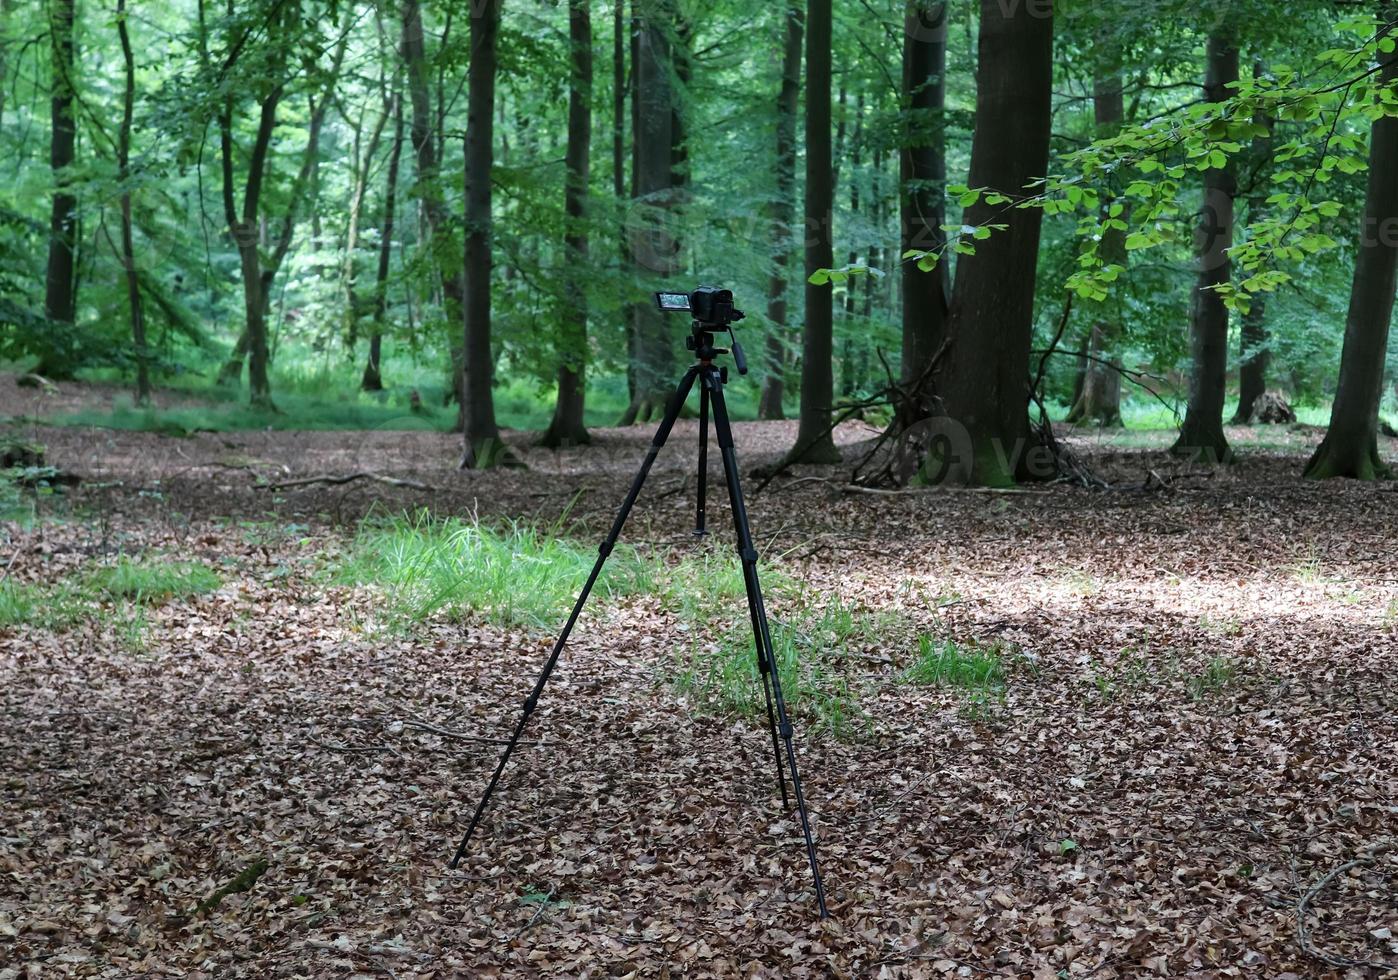 cámara en un trípode de pie en un bosque sin gente visible foto